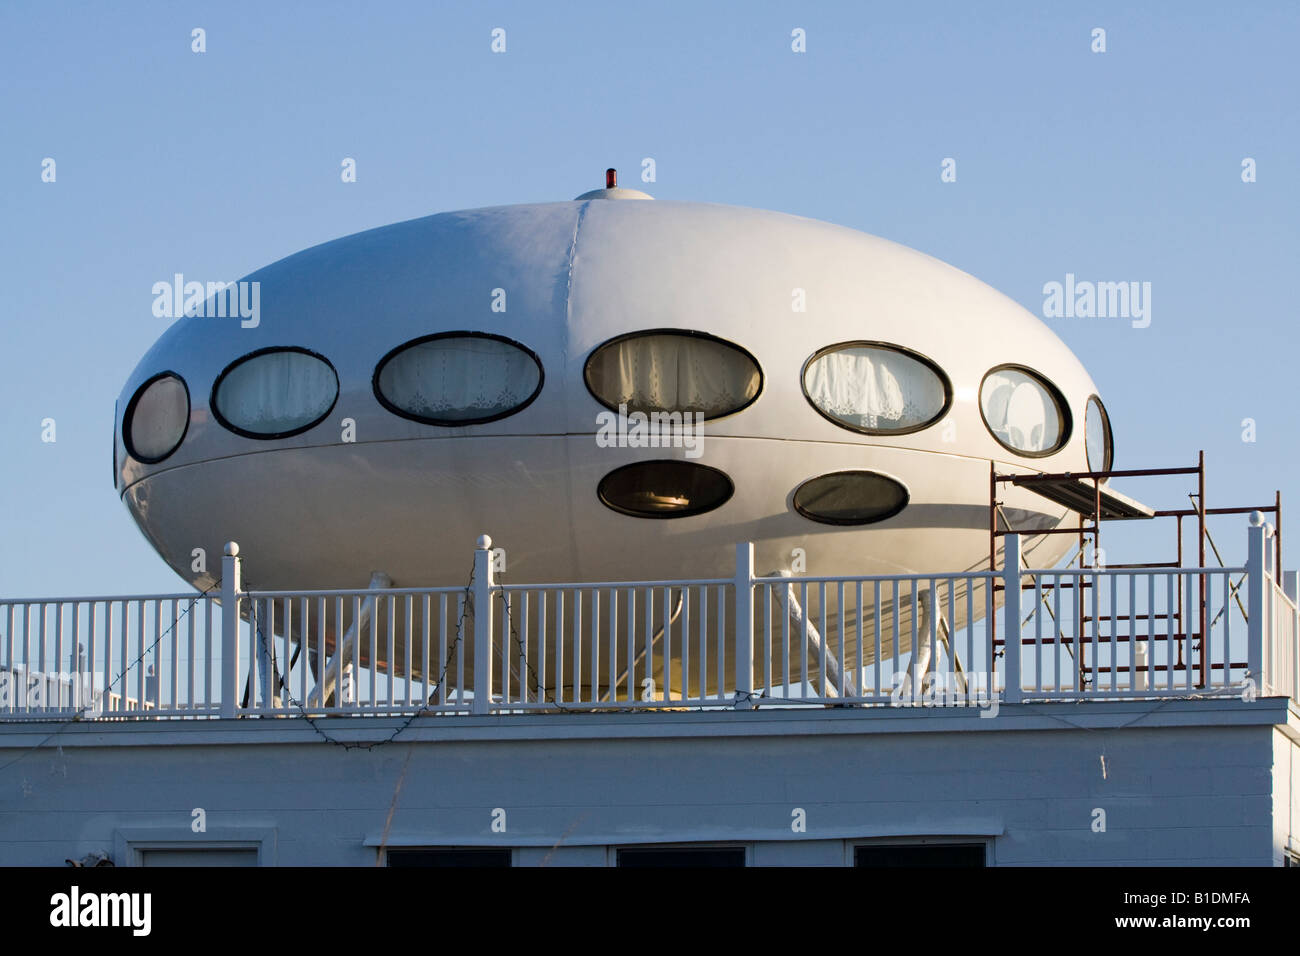 Haus von Futuro Raum-Schiff in Pensacola FL Fertighaus von Matti Suuronen entworfen Stockfoto